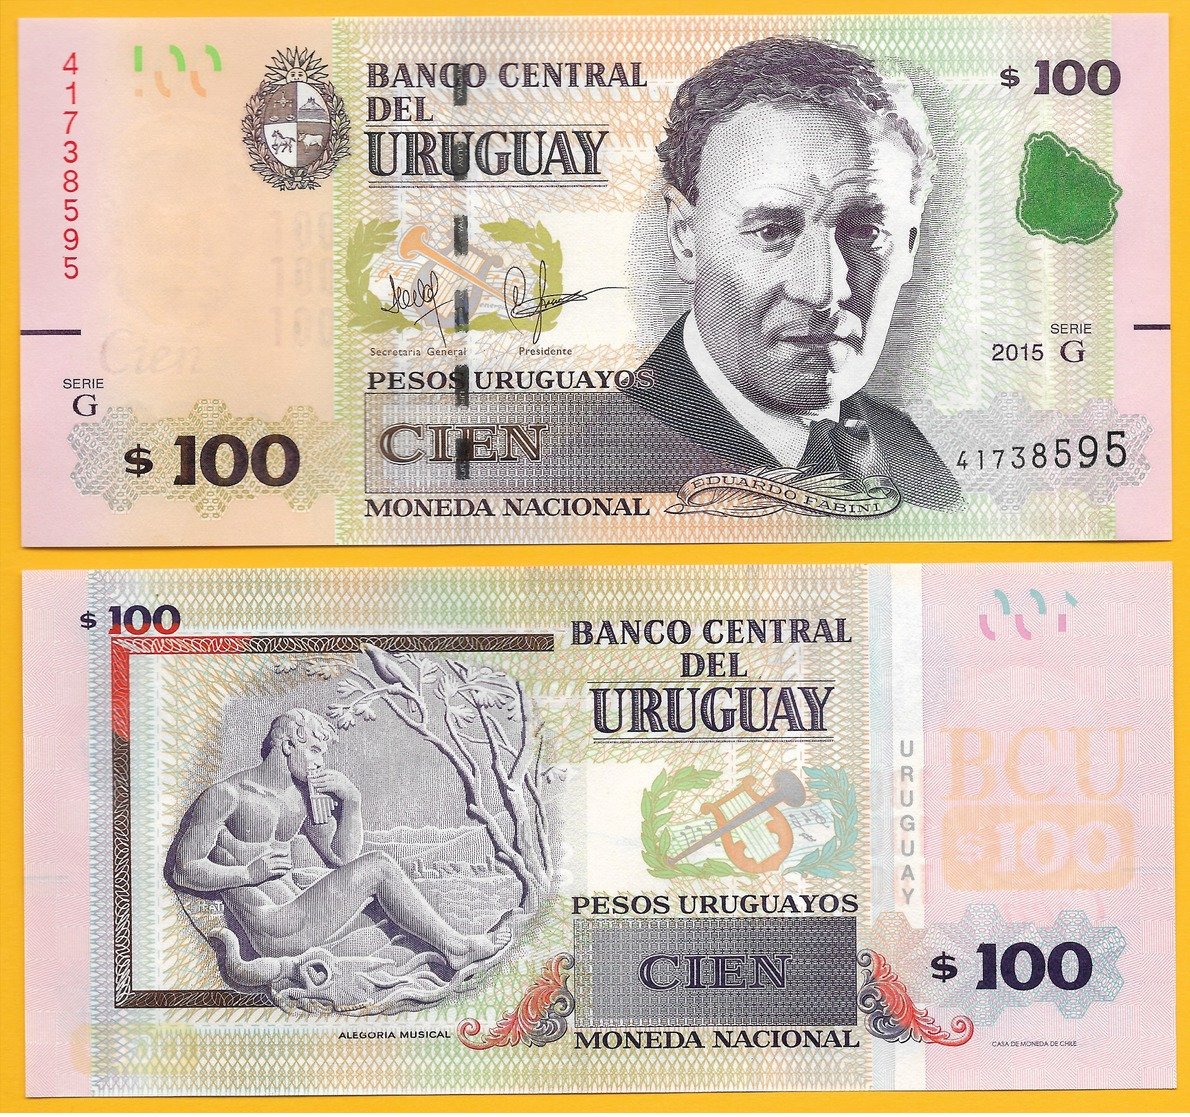 Uruguay 100 Pesos Uruguayos P-88c 2015(2017) (Serie G) UNC - Uruguay